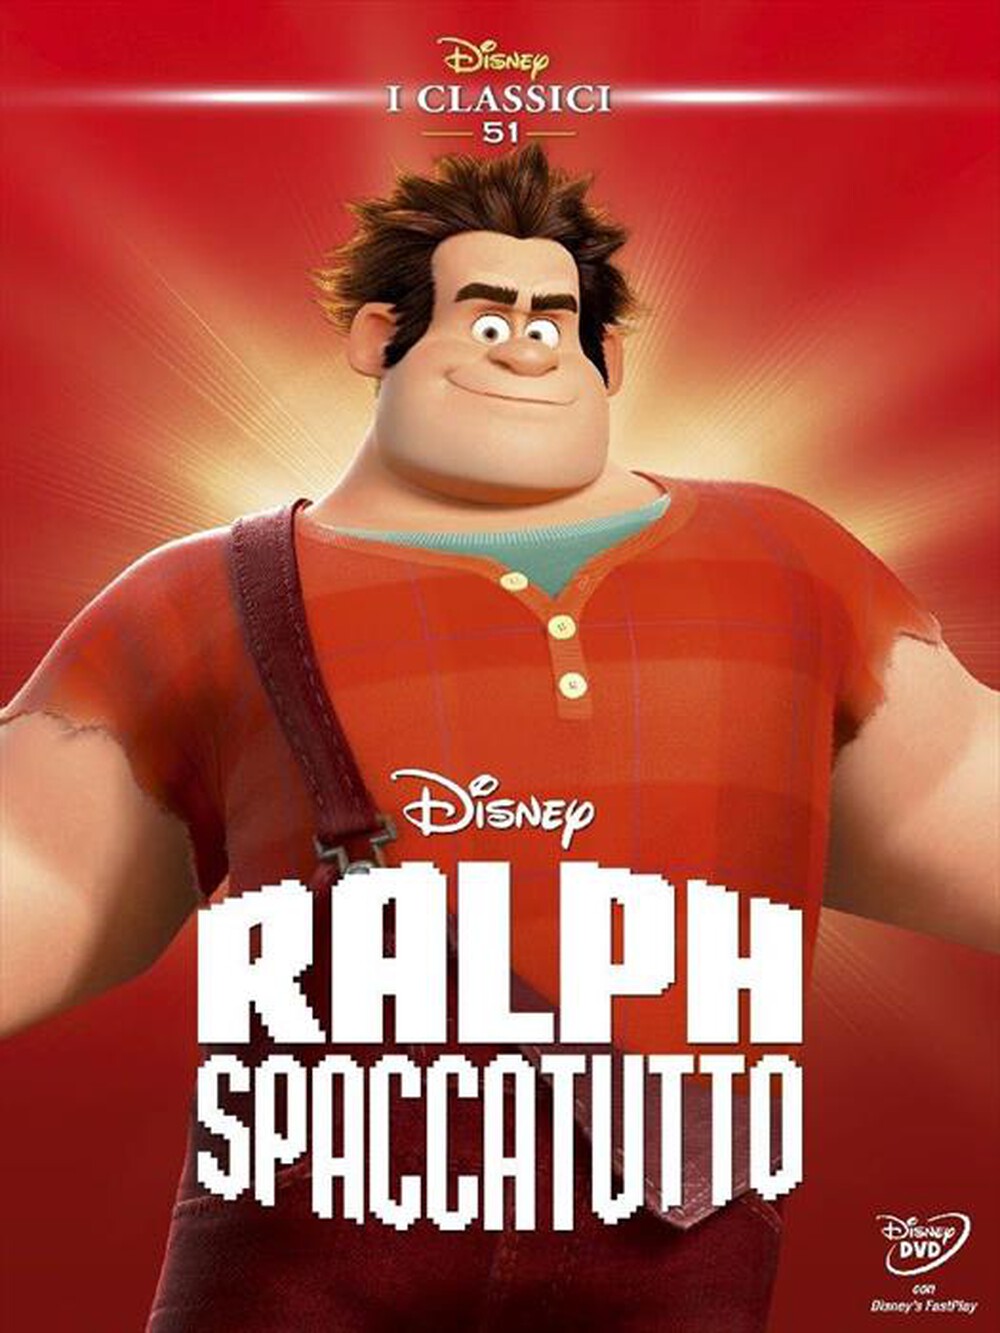 "WALT DISNEY - Ralph Spaccatutto - "